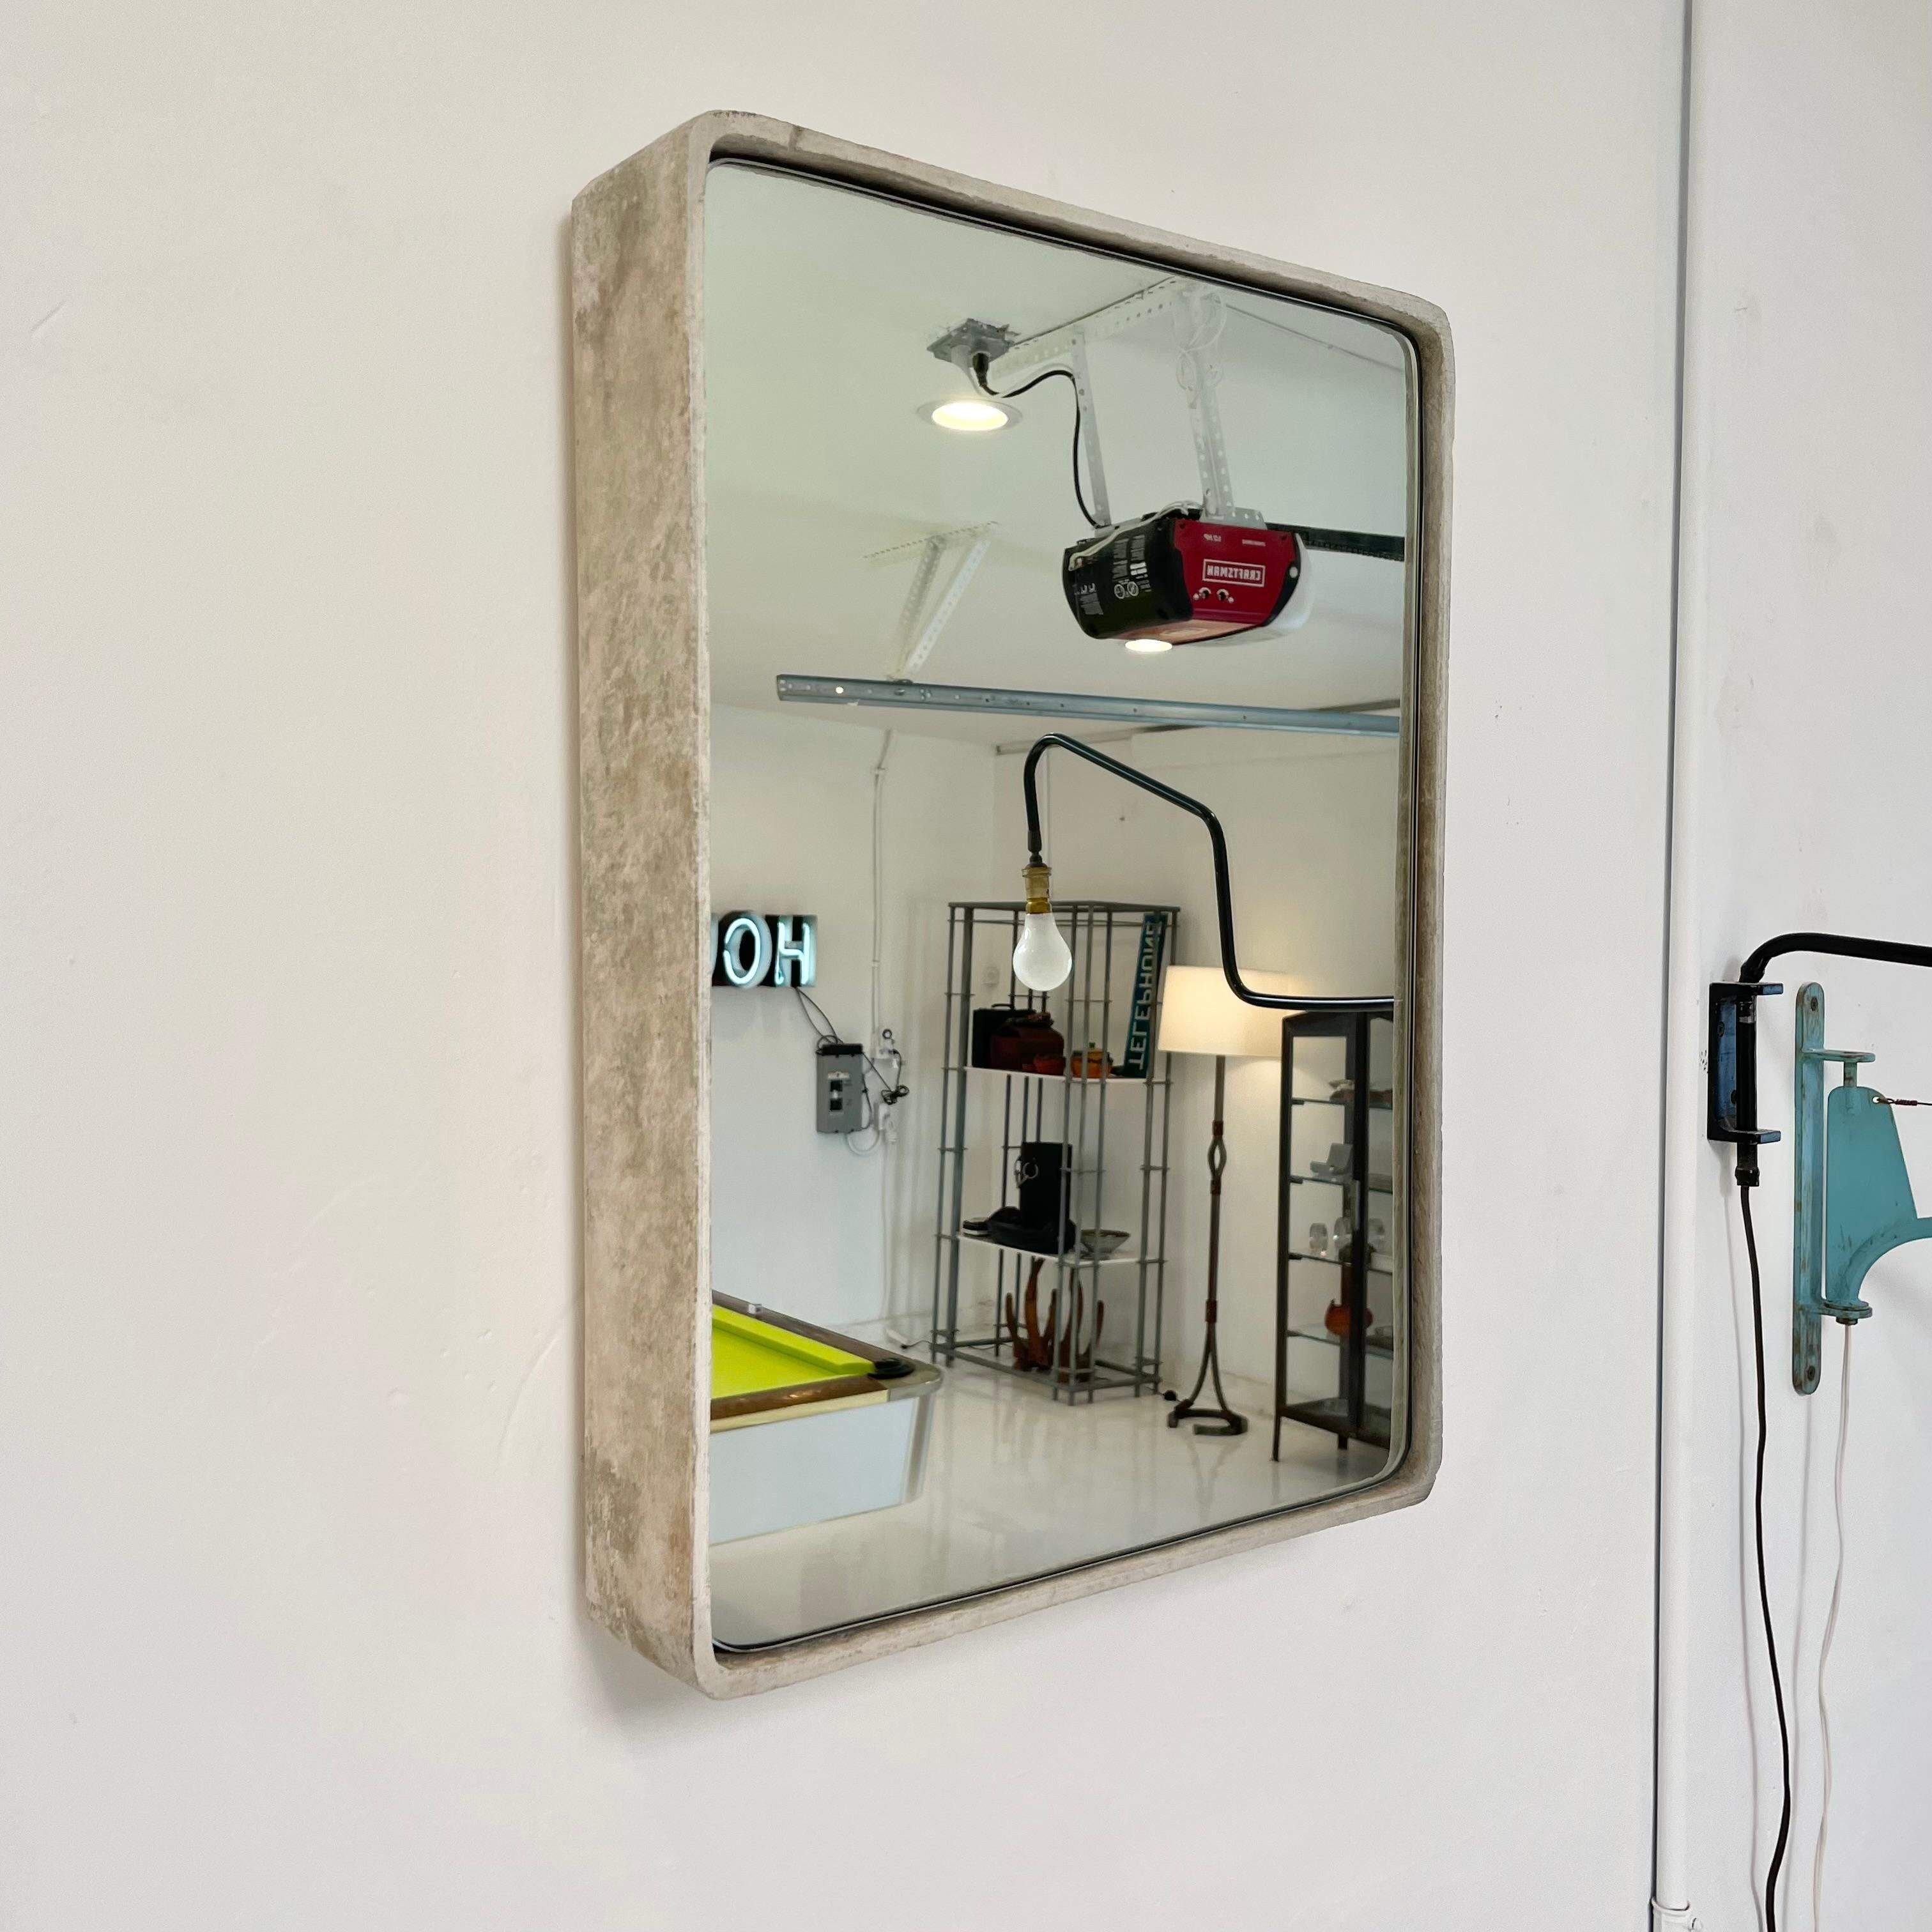 Magnifique miroir rectangulaire en béton de Willy Guhl. La cuve en béton a été produite à l'origine dans l'usine Eternit en Suisse dans les années 1960 et le miroir a été professionnellement taillé à la main et ajouté récemment. Belle patine